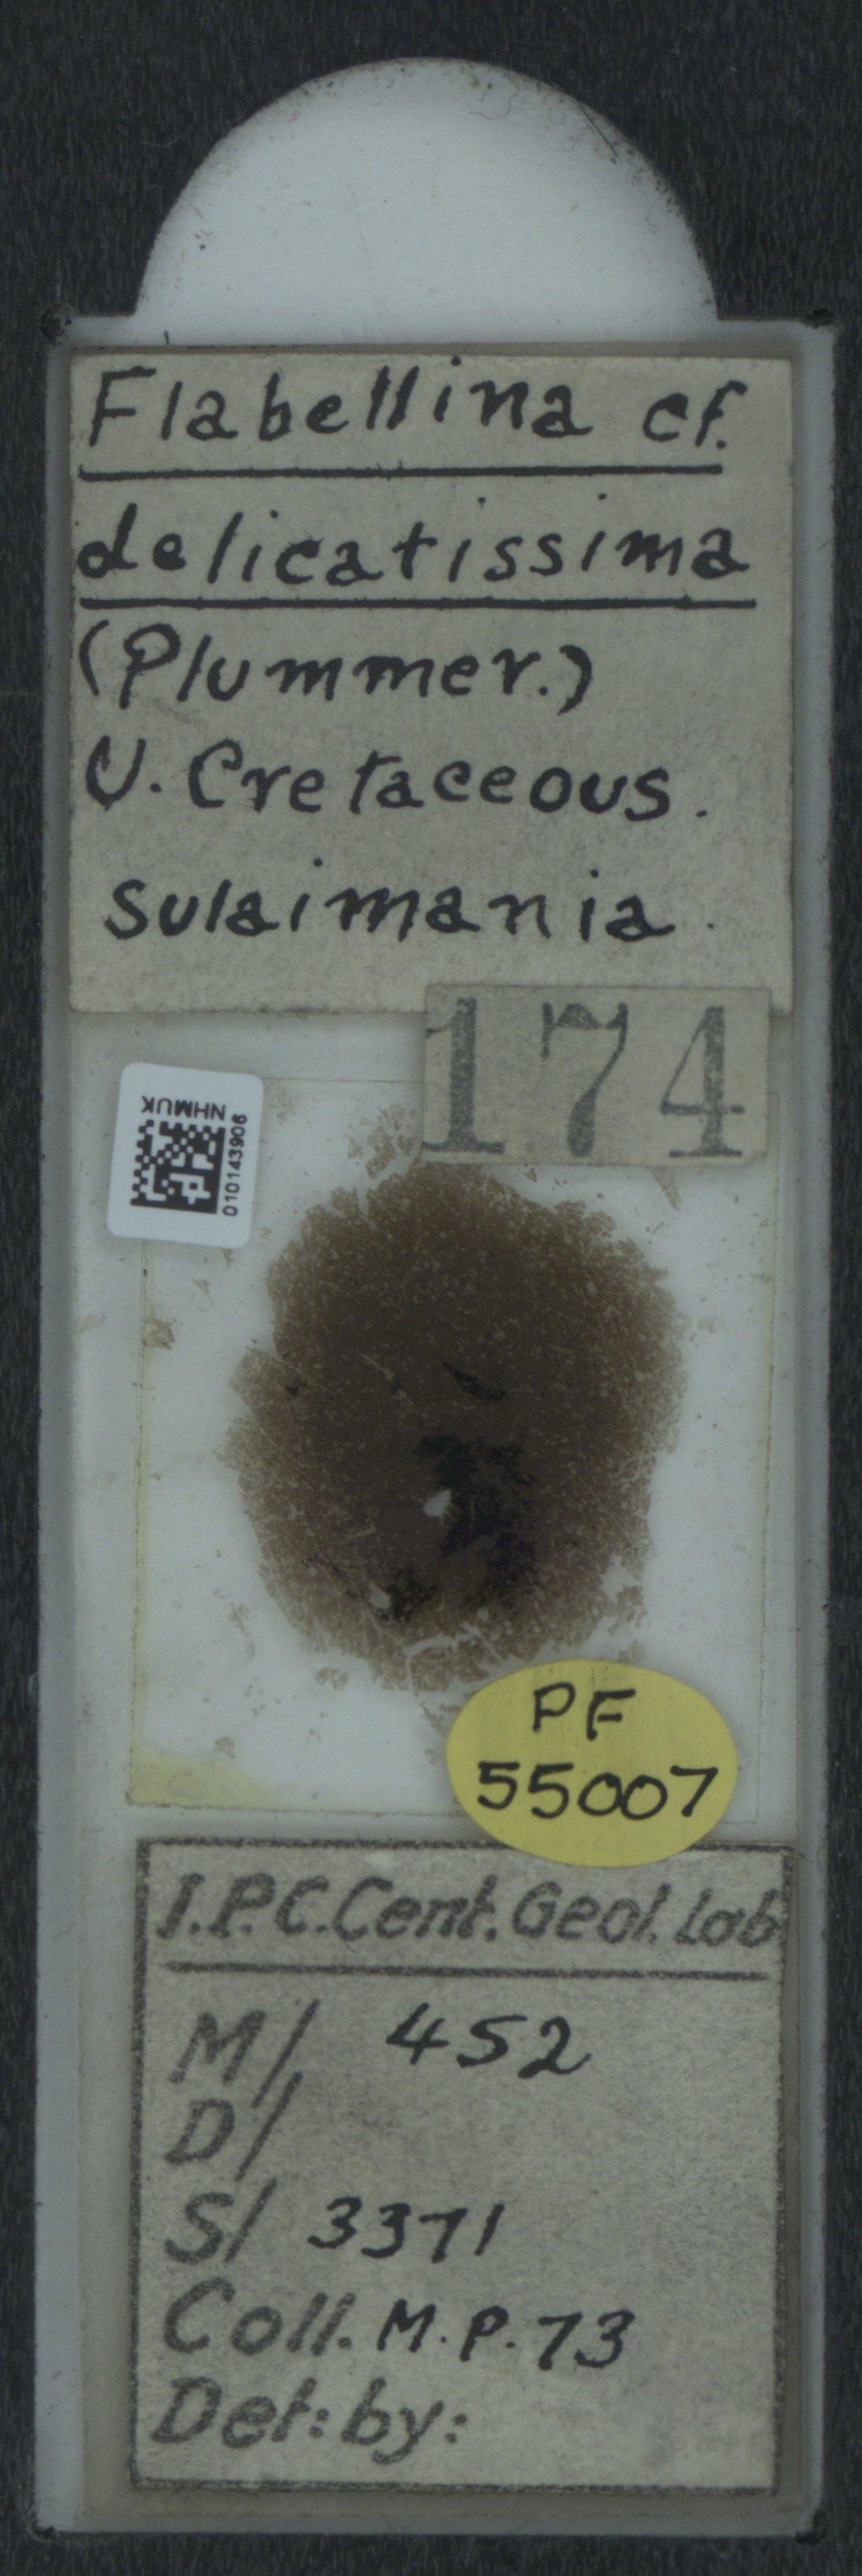 To NHMUK collection (Flabellina delicatissima (Plummer); NHMUK:ecatalogue:2034610)